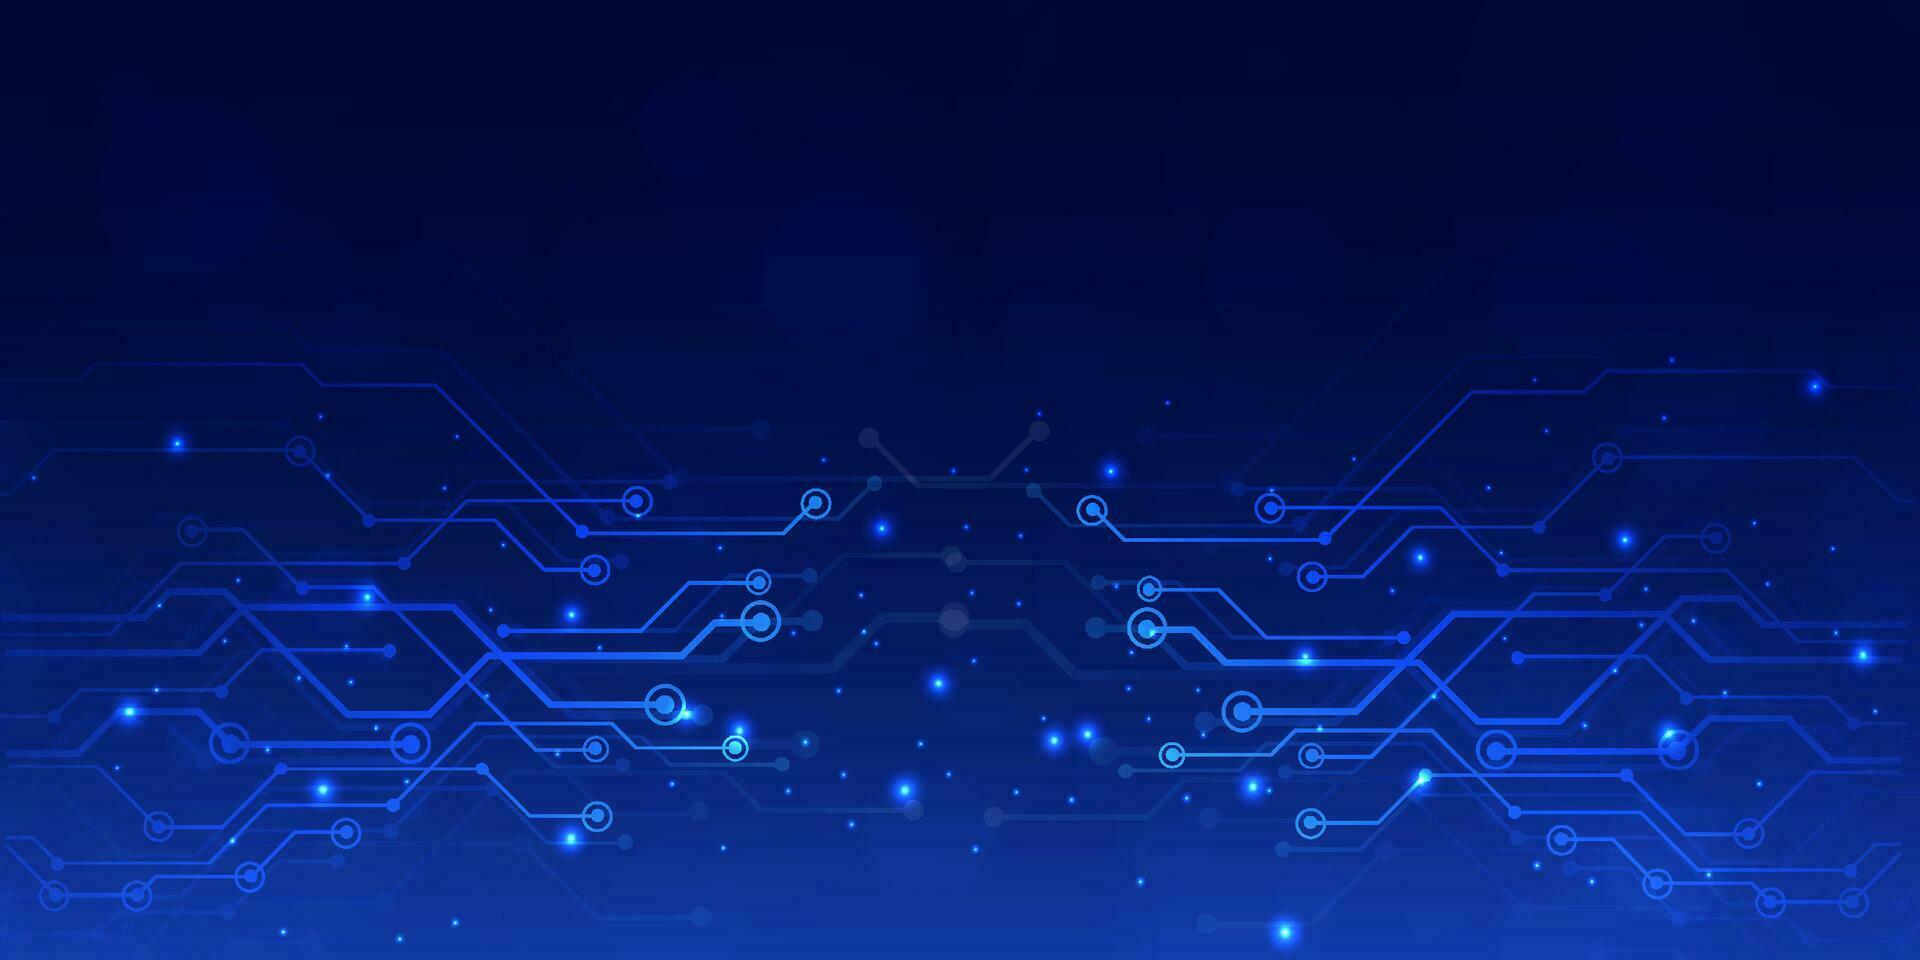 abstrakt Digital Technologie futuristisch groß Daten Blau Hintergrund, Cyber Nano Information Kommunikation, Innovation Zukunft Technik Daten, Internet Netzwerk Verbindung, Schaltkreis Tafel Linie Punkt Illustration vektor